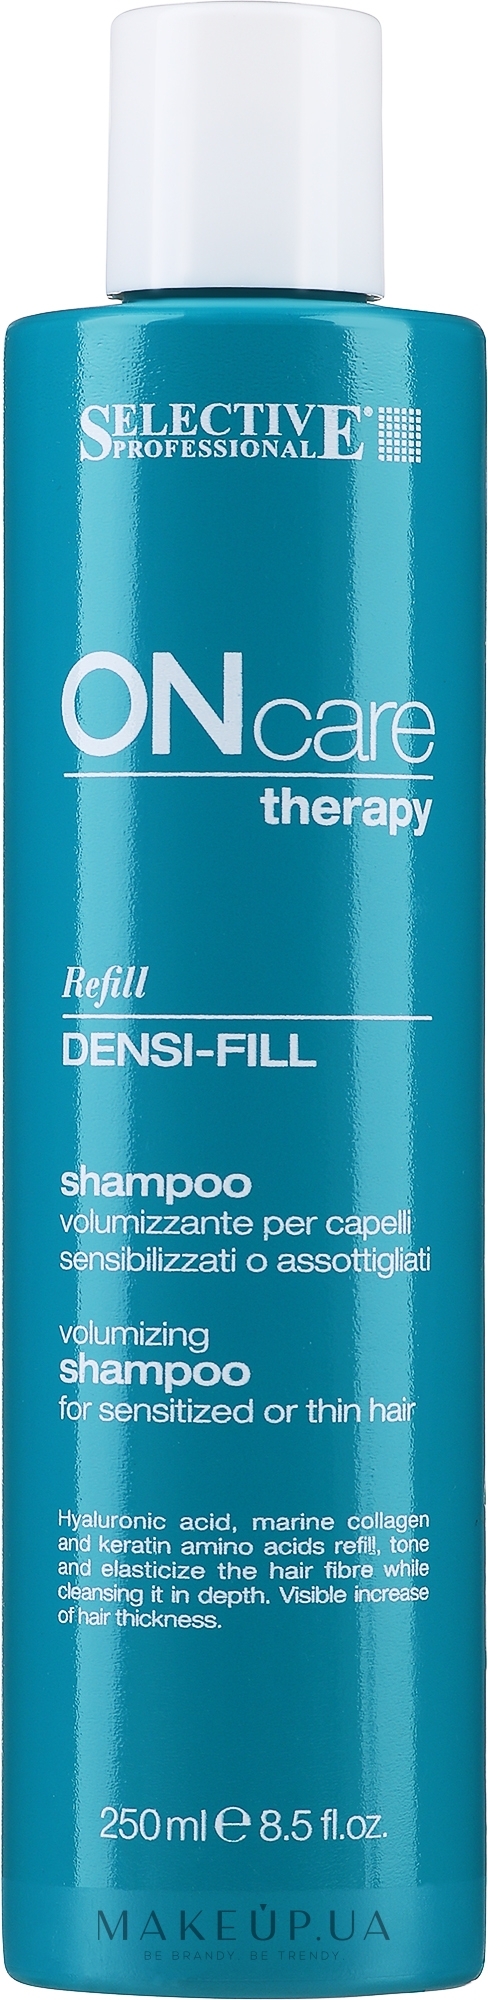 Шампунь филлер для ухода за поврежденными или тонкими волосами - Selective Professional On Care Densi-Fill Shampoo — фото 250ml